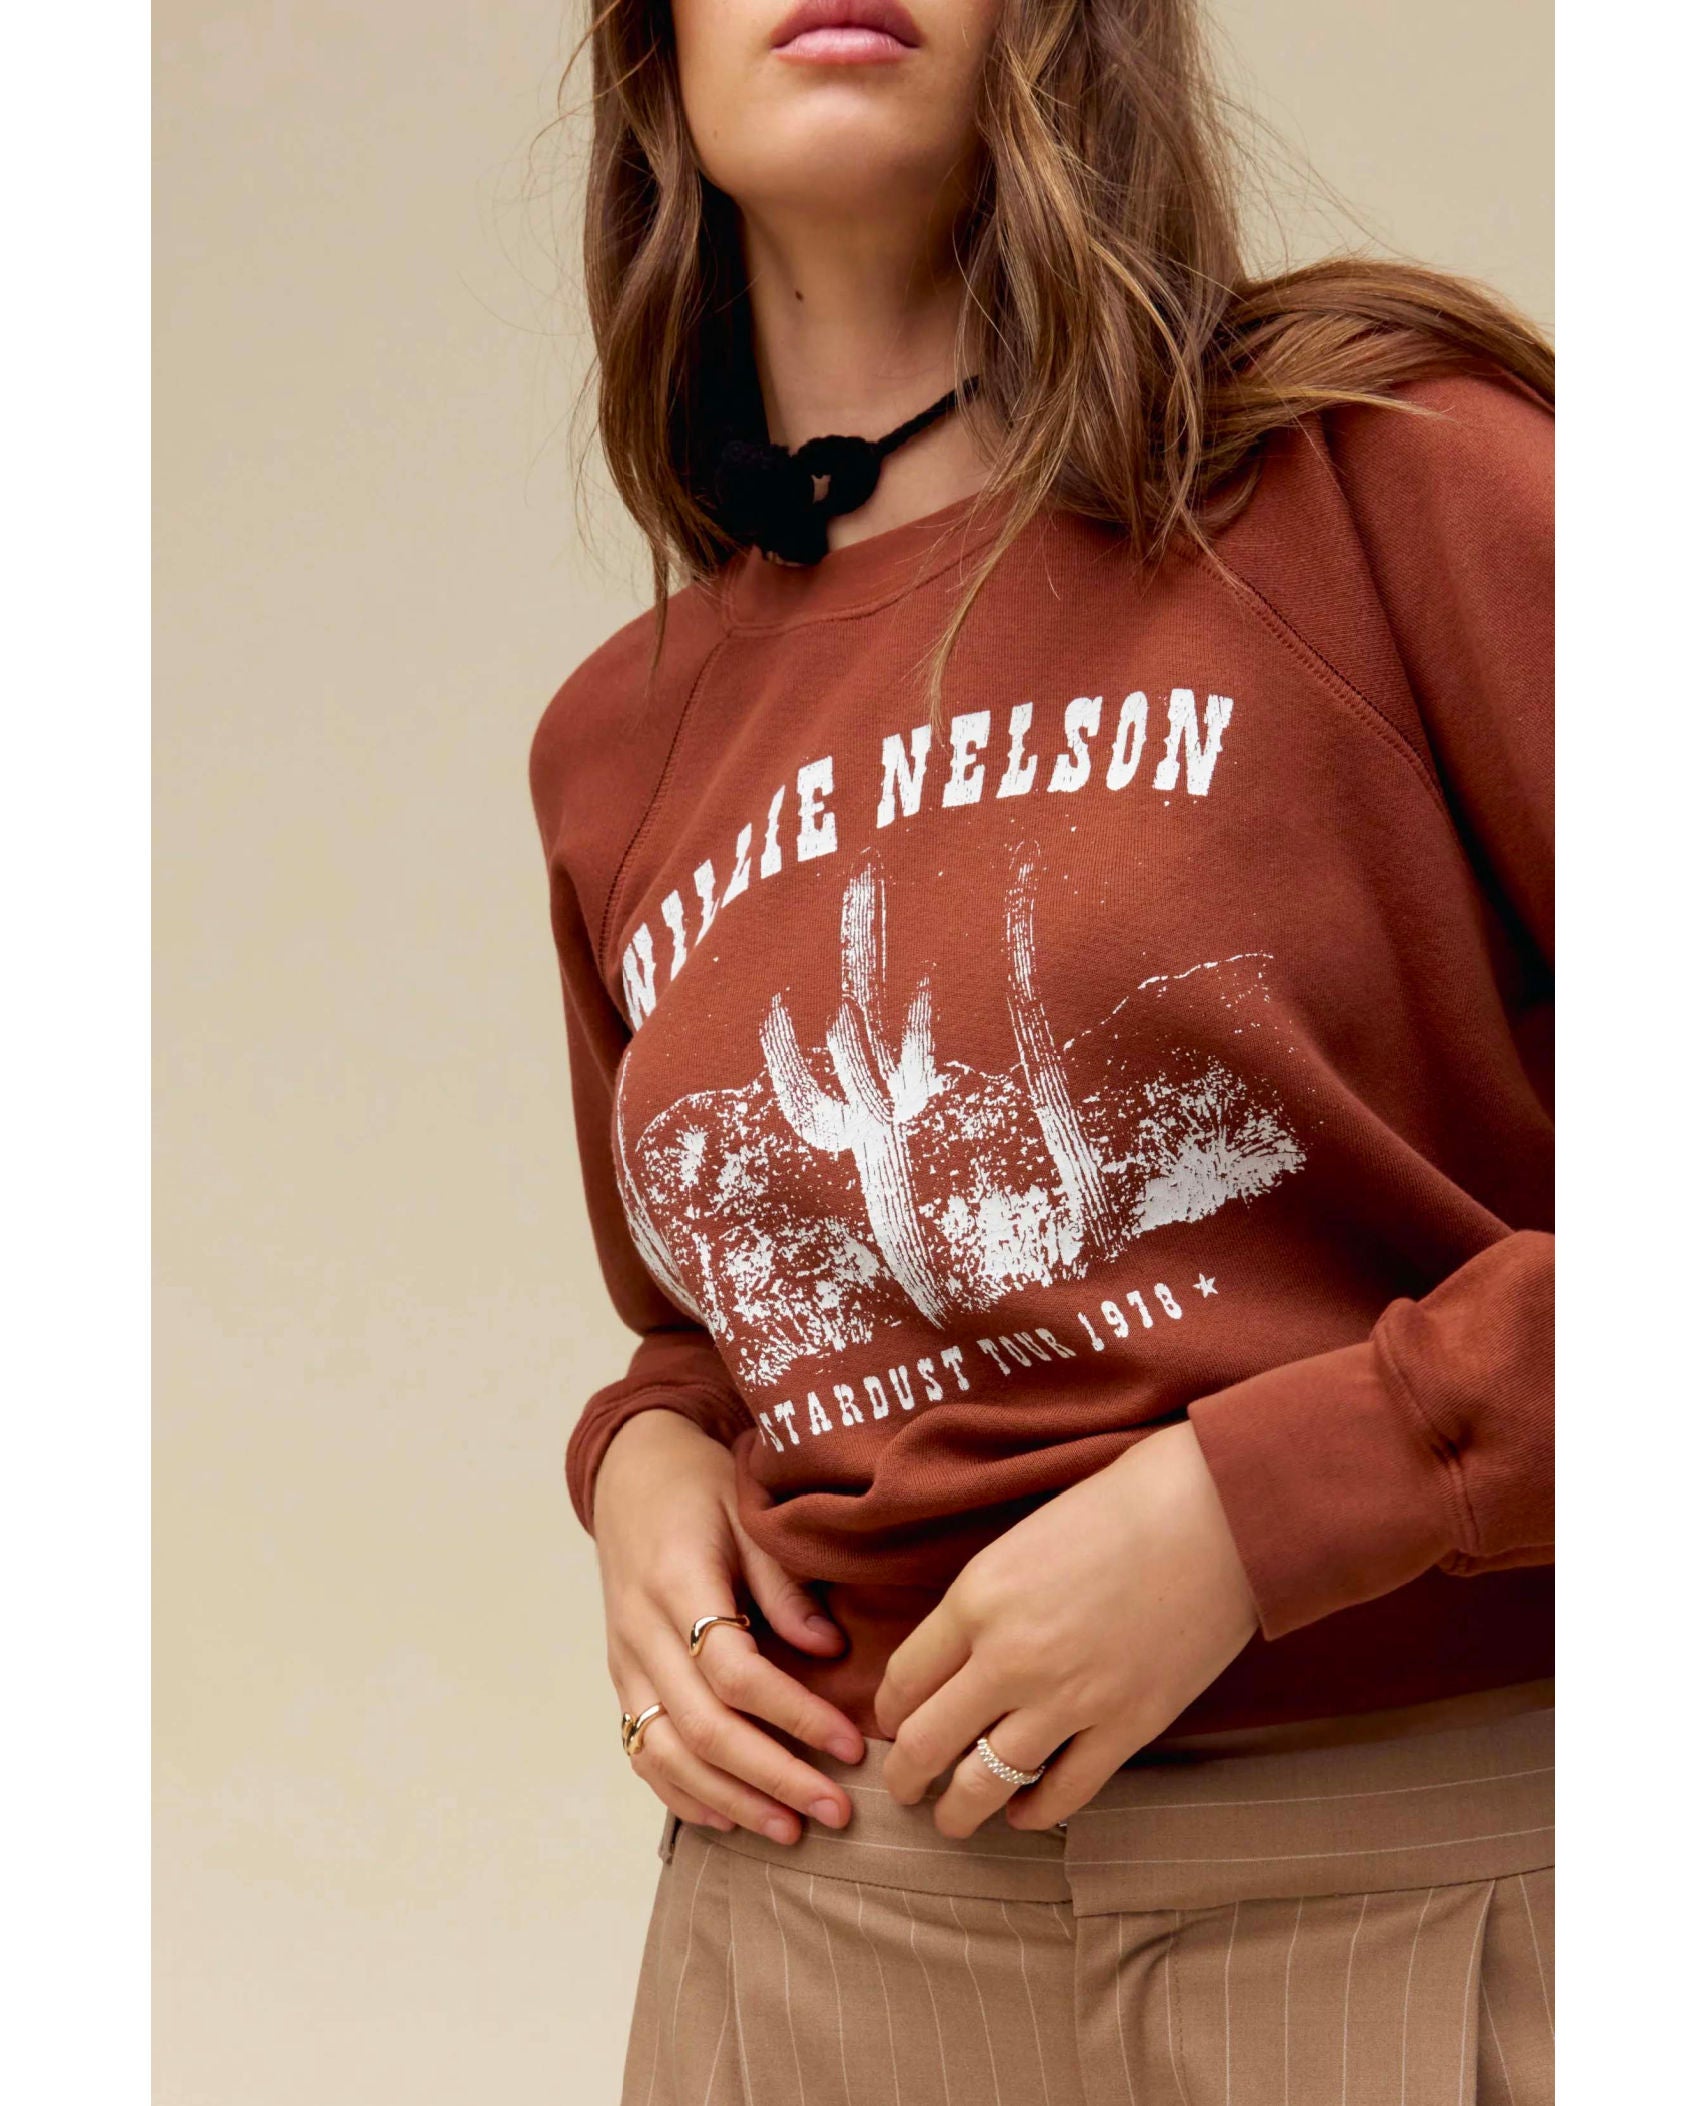 Willie Nelson Stardust Tour Raglan Crew Sweatshirt